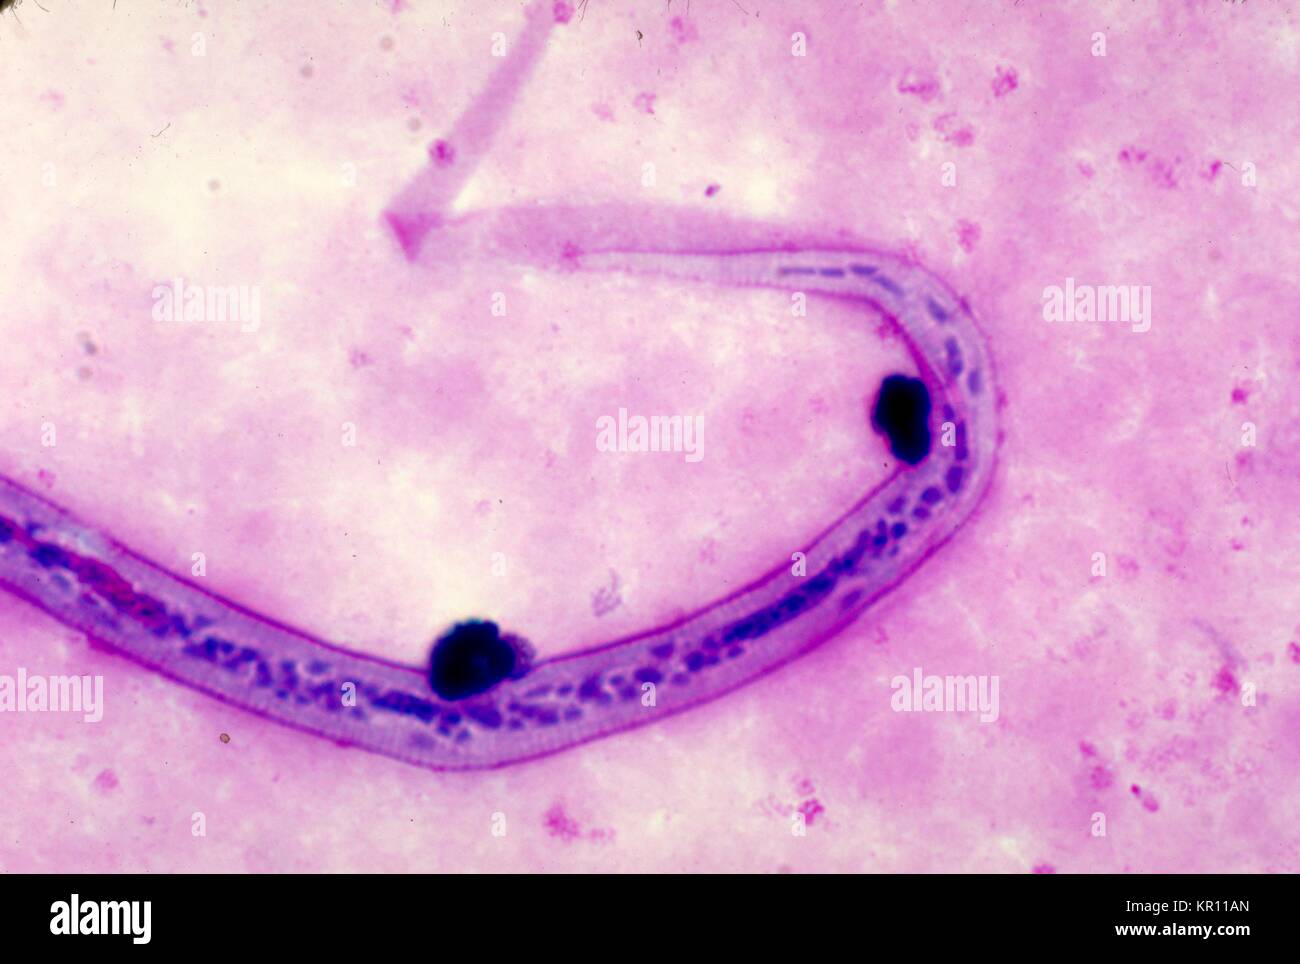 Dies ist eine Aufnahme von der posterioren Ende einer Wuchereria bancrofti microfilaria mit Giemsa Fleck, 1977 Blut verschmiert. W. bancrofti, der häufigsten filarial Parasit im Menschen, ist eines der Erreger, die an lymphatischer Filariose erkrankt sind. Die lymphatische Filariose wirkt sich auf schätzungsweise 120 Millionen Menschen in tropischen Gebieten der Welt. Bild mit freundlicher Genehmigung von CDC/Dr. Mae Melvin. Stockfoto